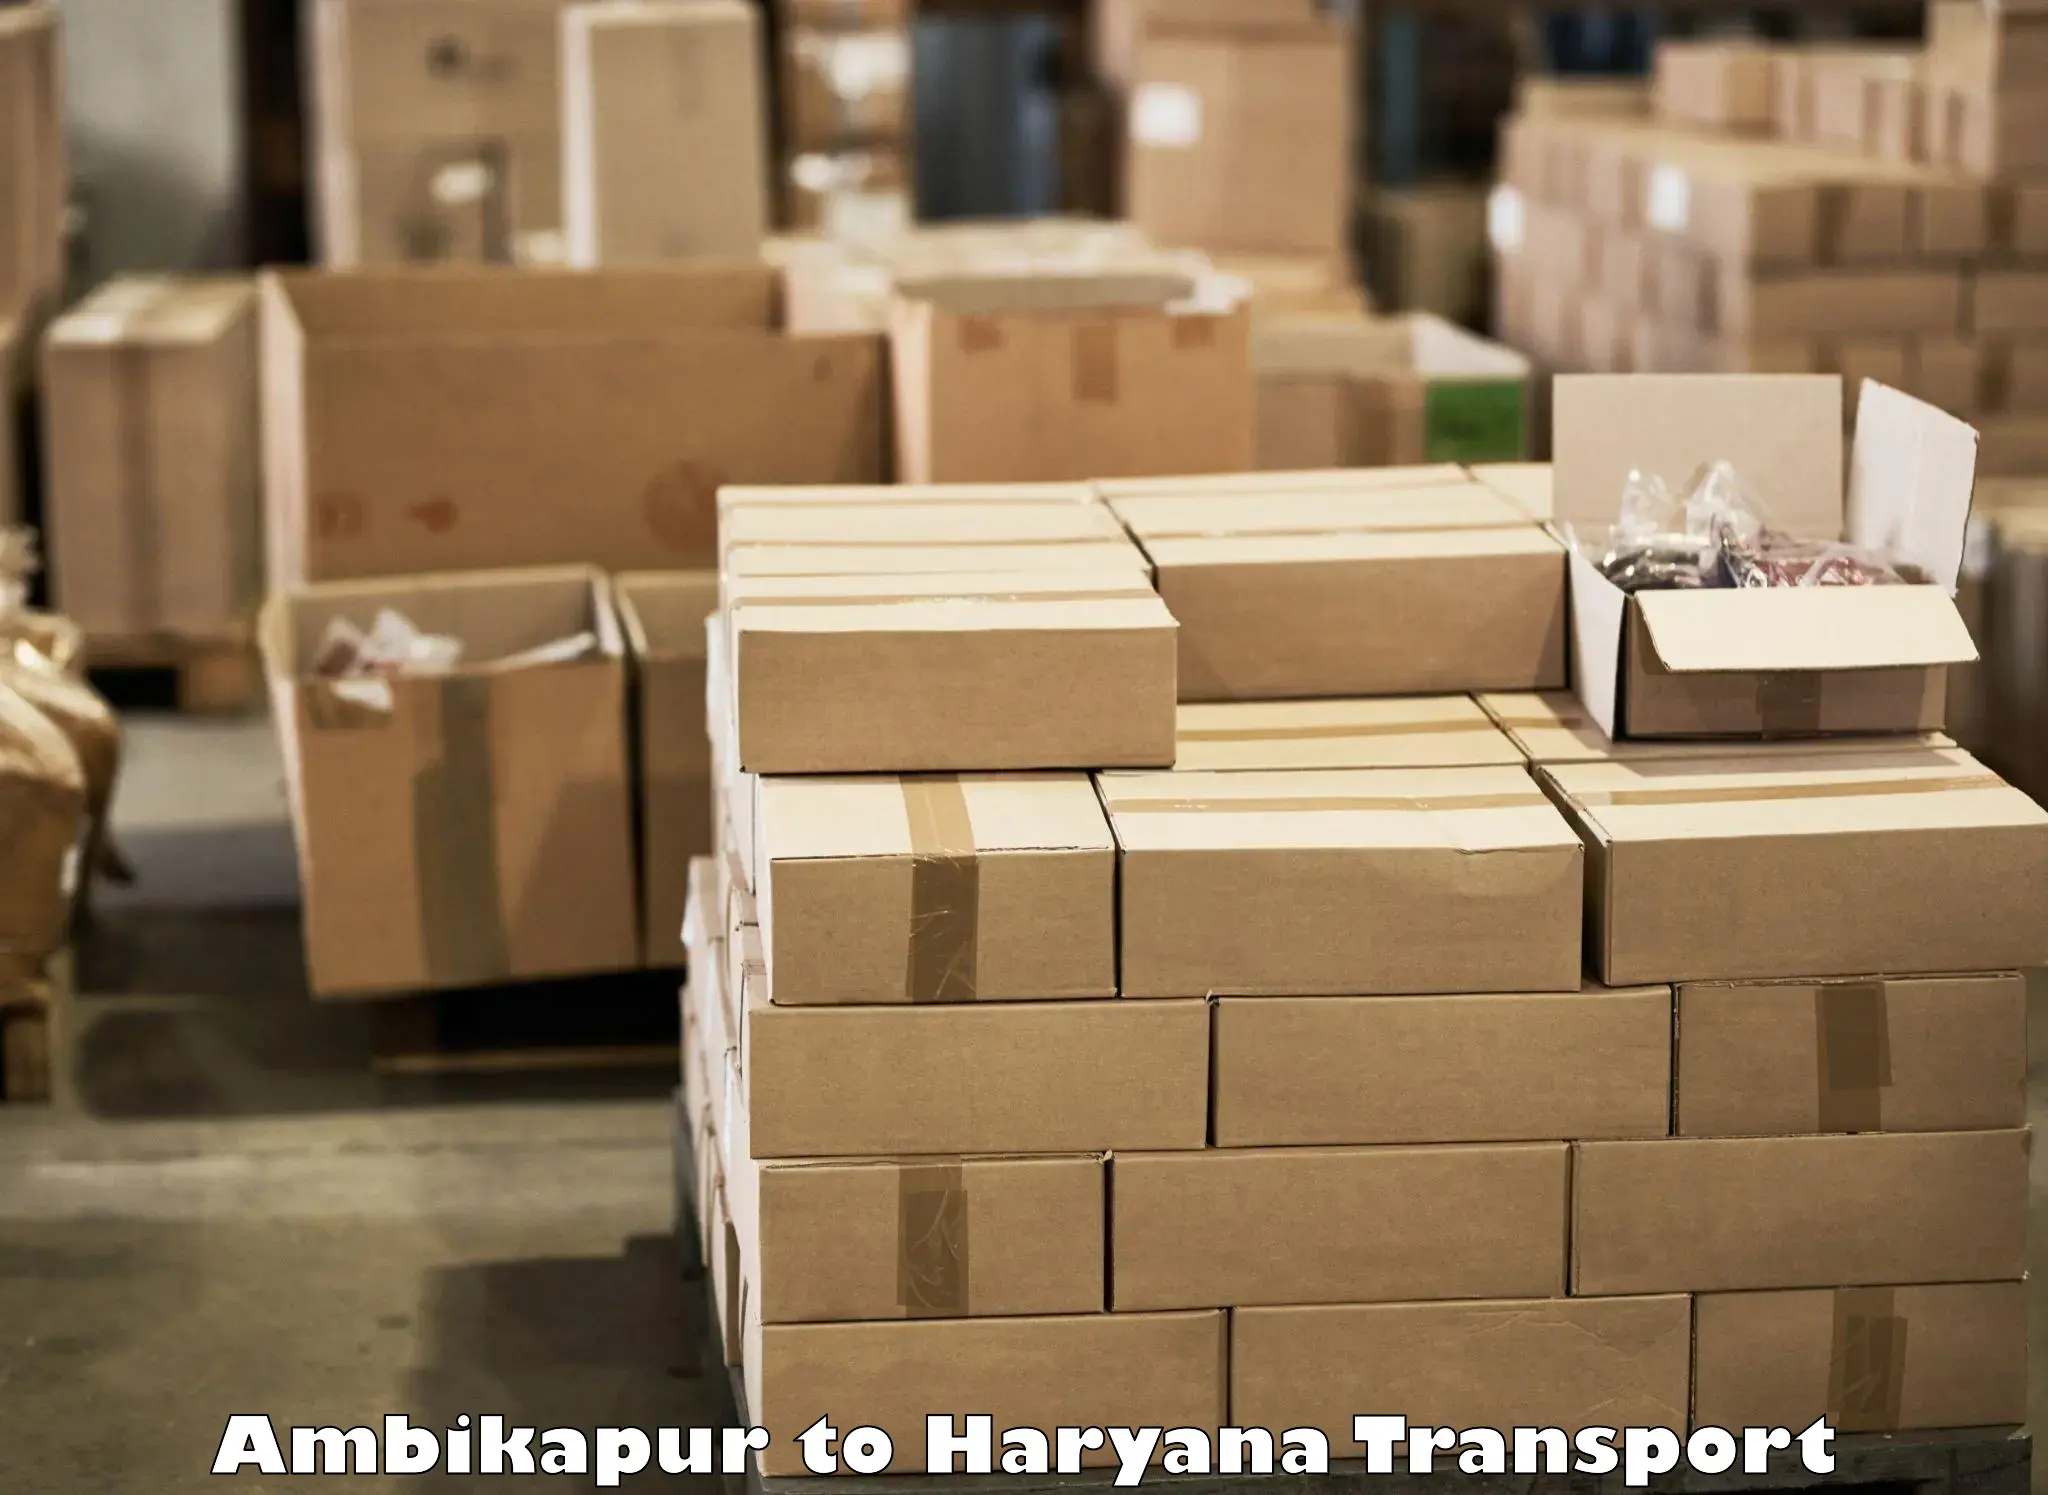 Bike shipping service Ambikapur to Chaudhary Charan Singh Haryana Agricultural University Hisar